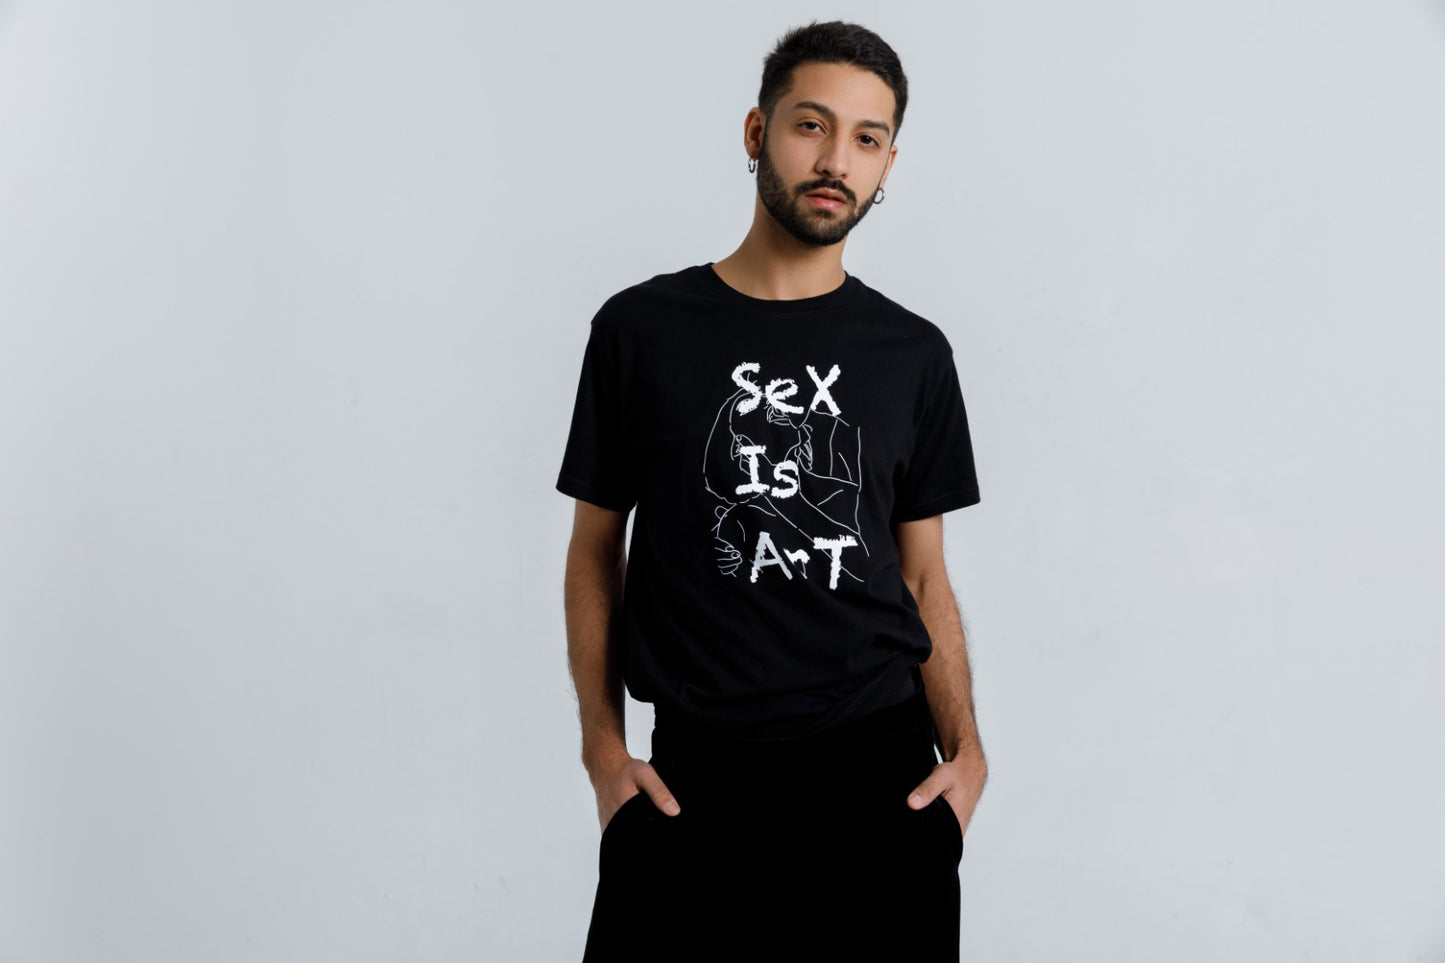 T-SHIRT "SEX IS ART"